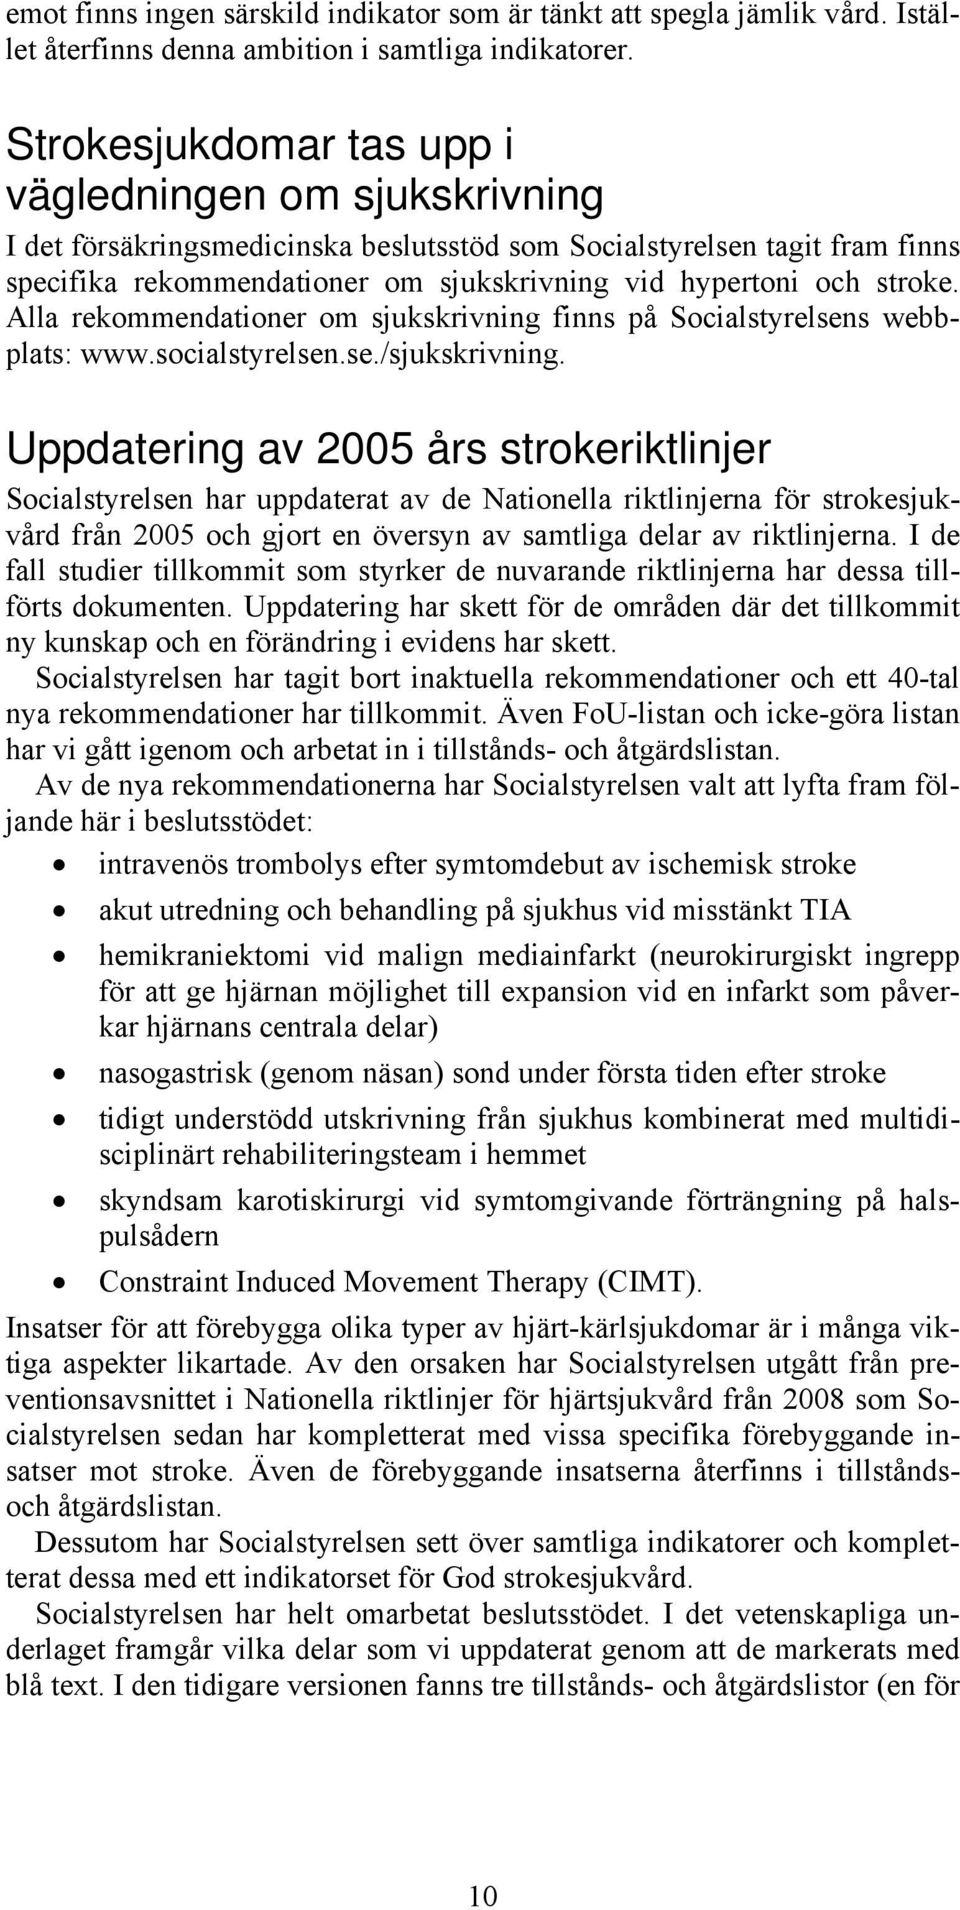 stroke. Alla rekommendationer om sjukskrivning finns på Socialstyrelsens webbplats: www.socialstyrelsen.se./sjukskrivning.